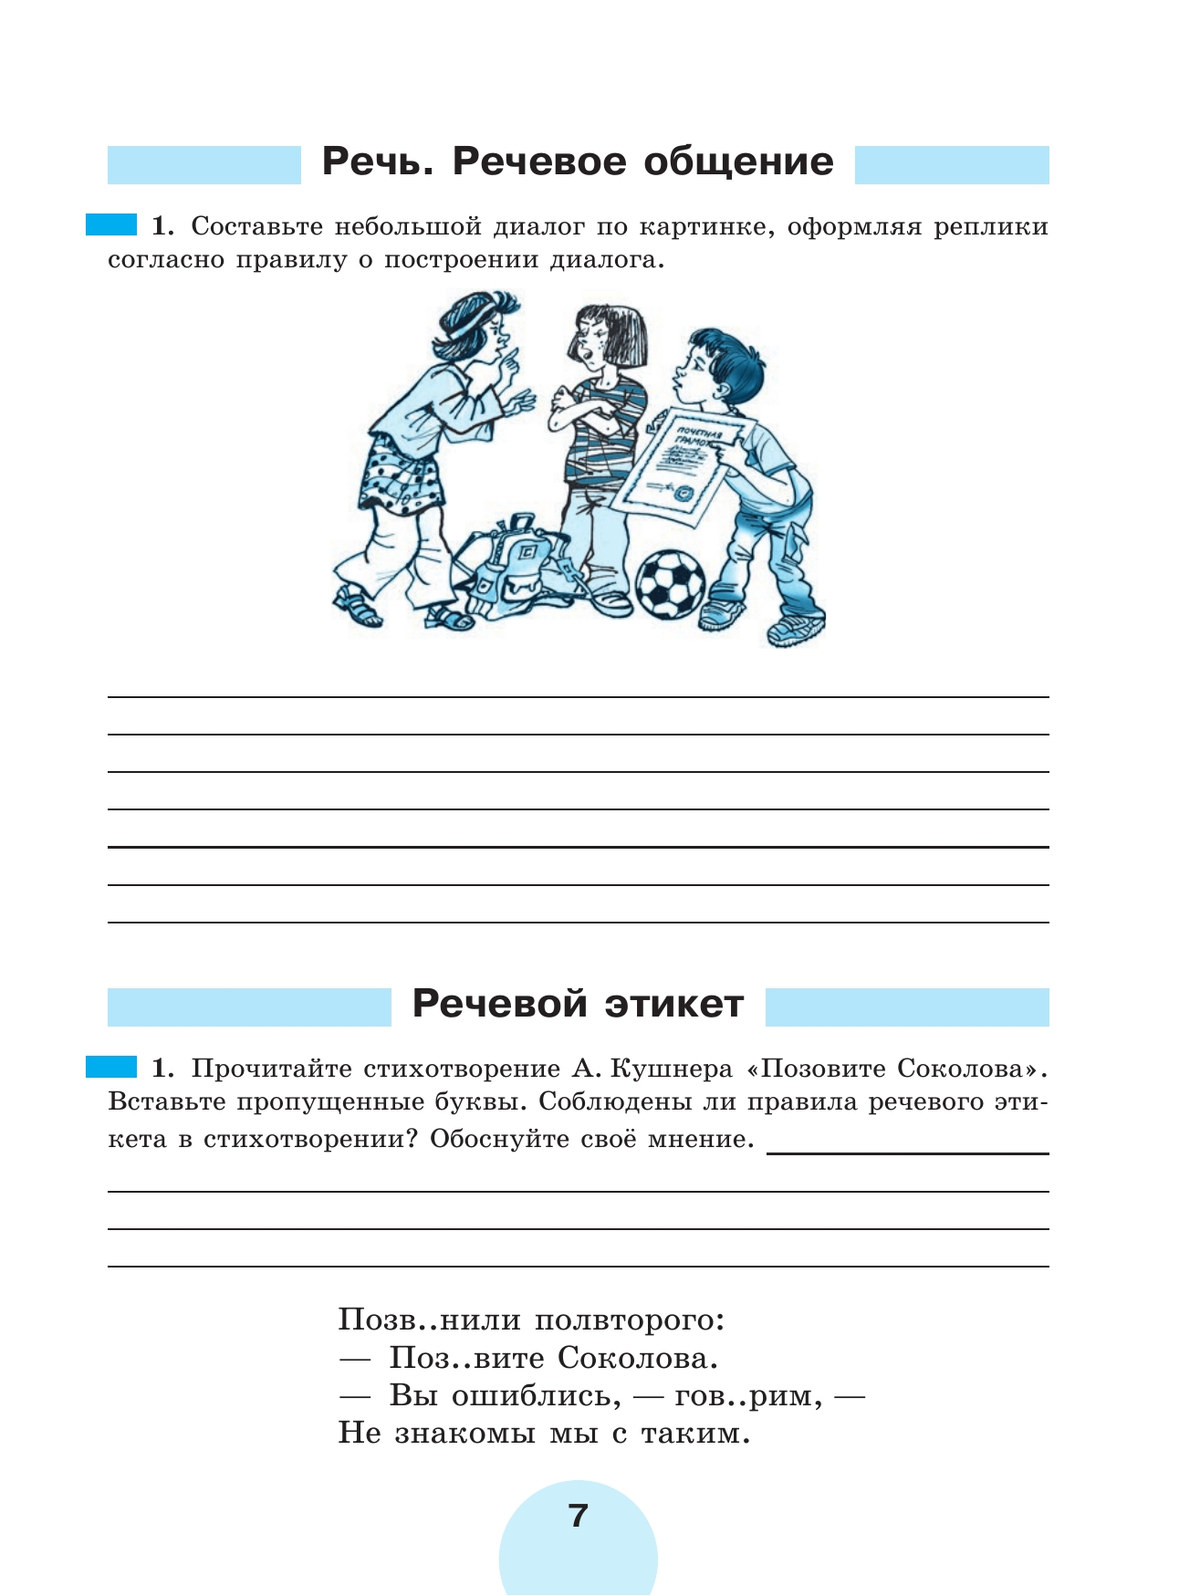 Русский язык. Рабочая тетрадь. 7 класс. В 2 ч. Часть 1 6